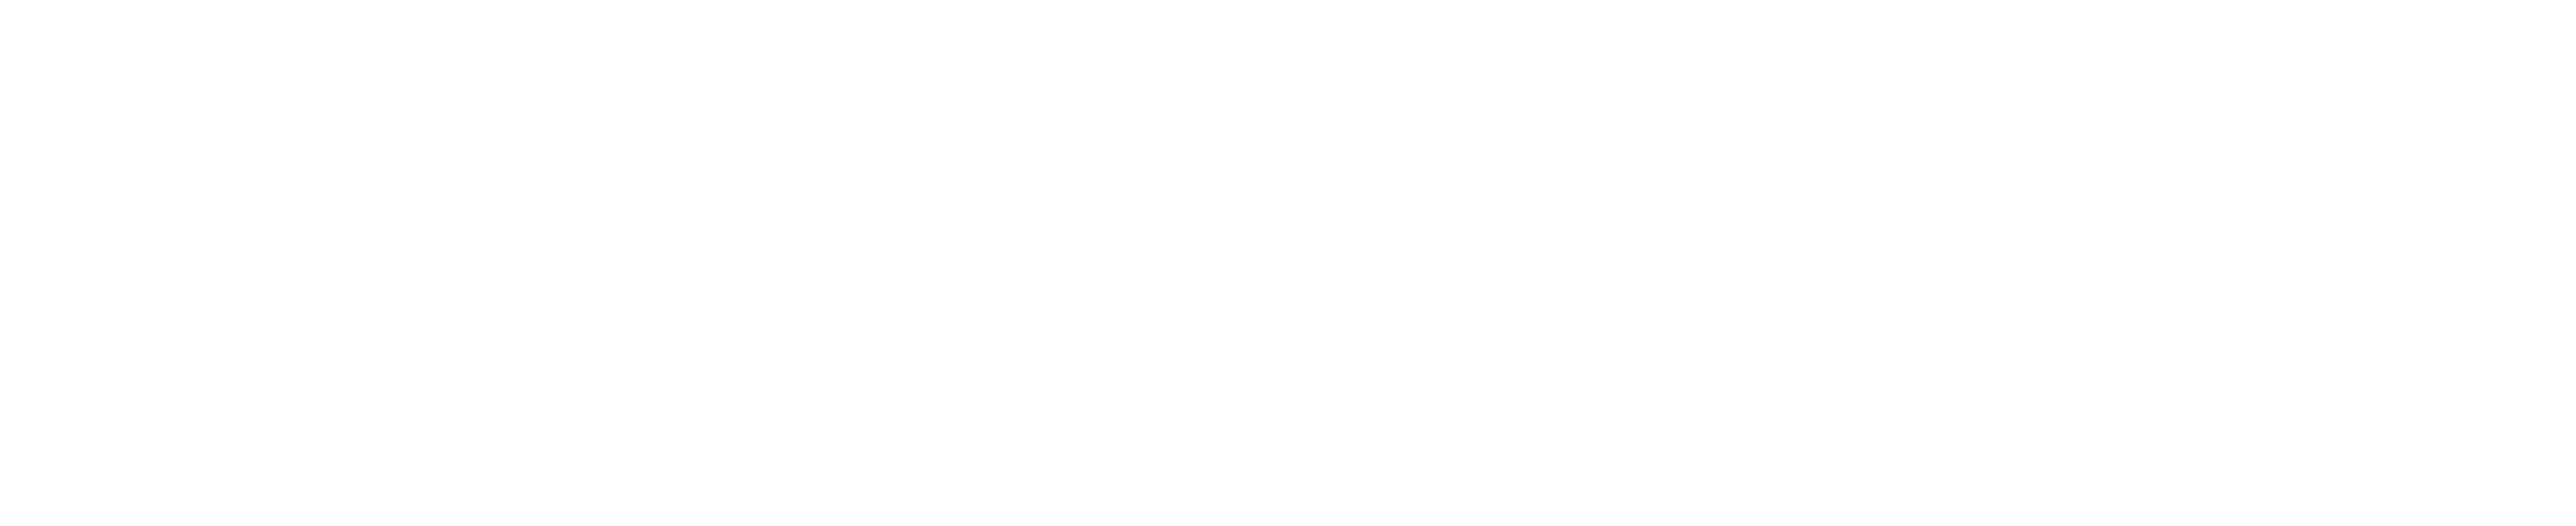 Arexico Logo